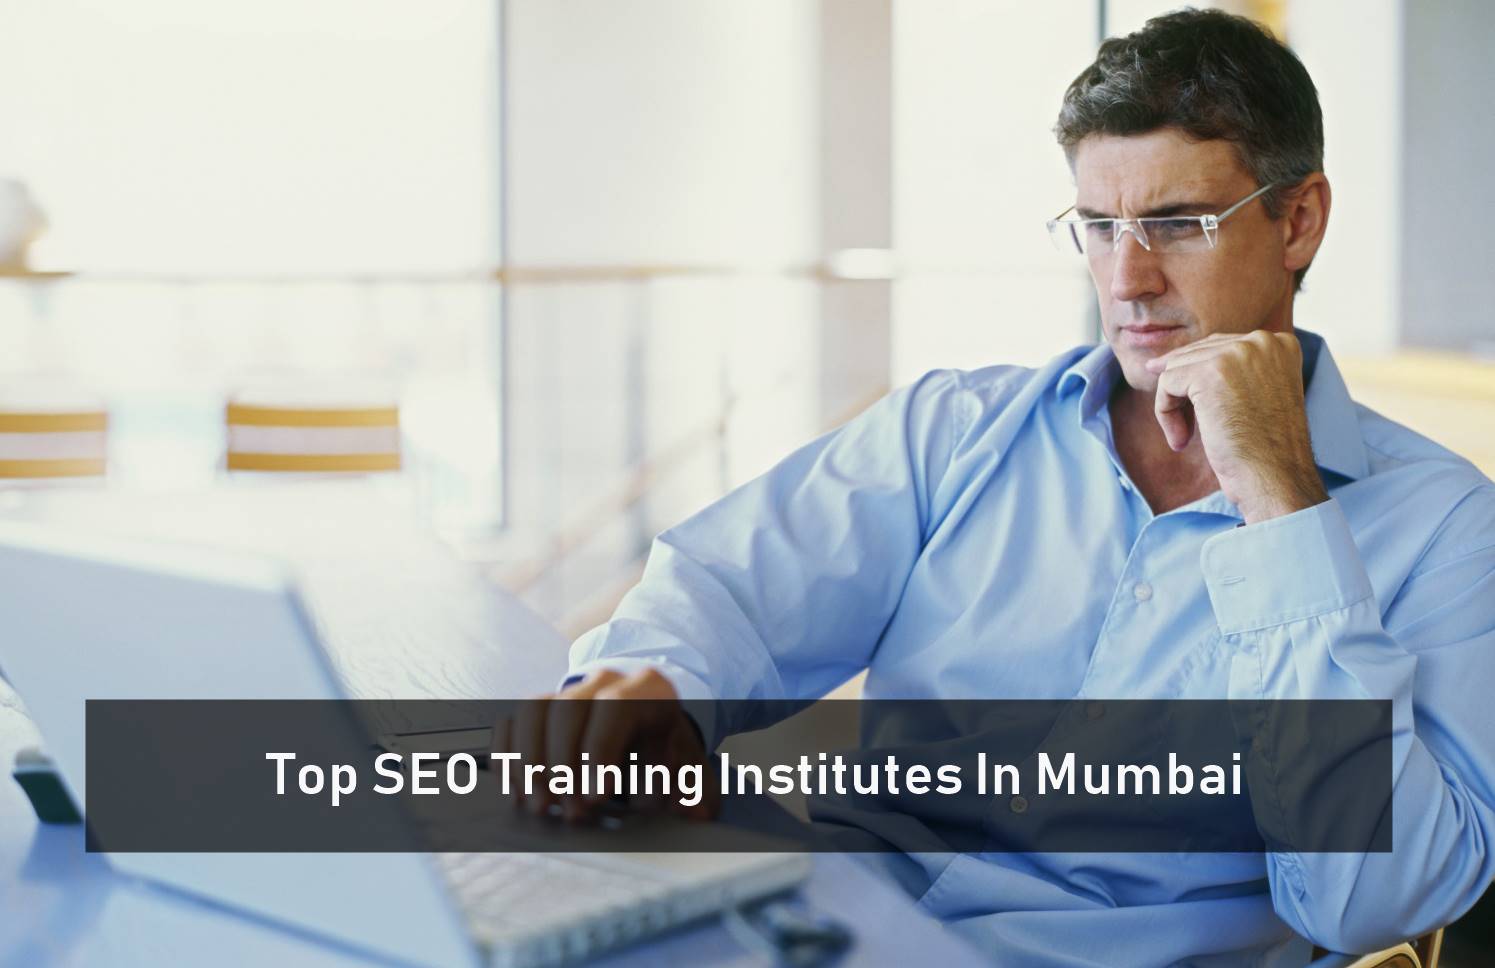 Top SEO Training Institutes In Mumbai